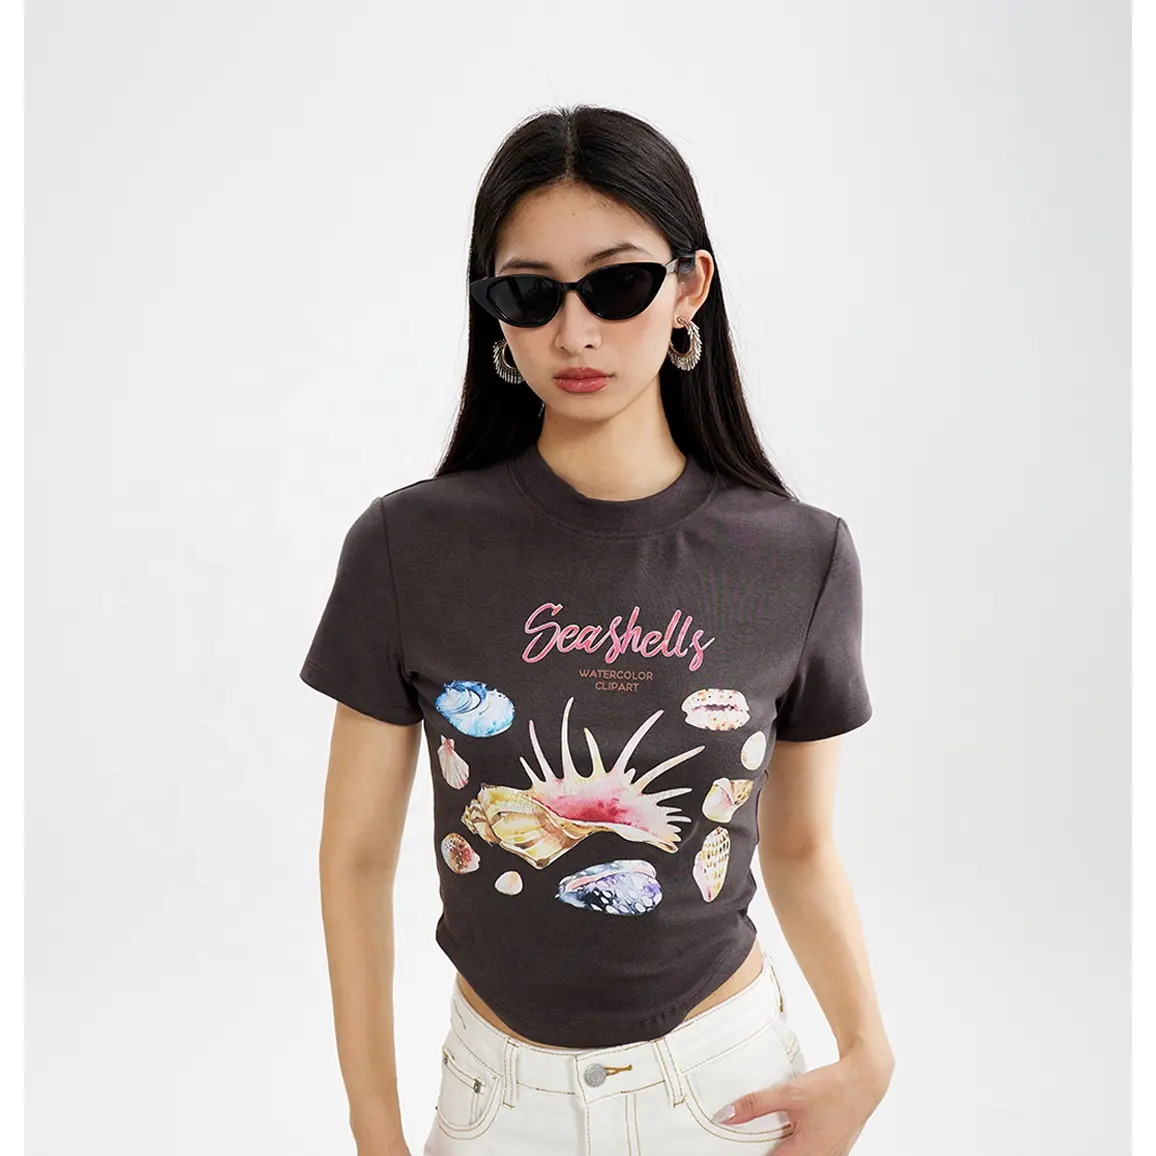 Camiseta feminina estampada em algodão com letras e conchas de manga curta com gola ultra magro e temperos doces para meninas